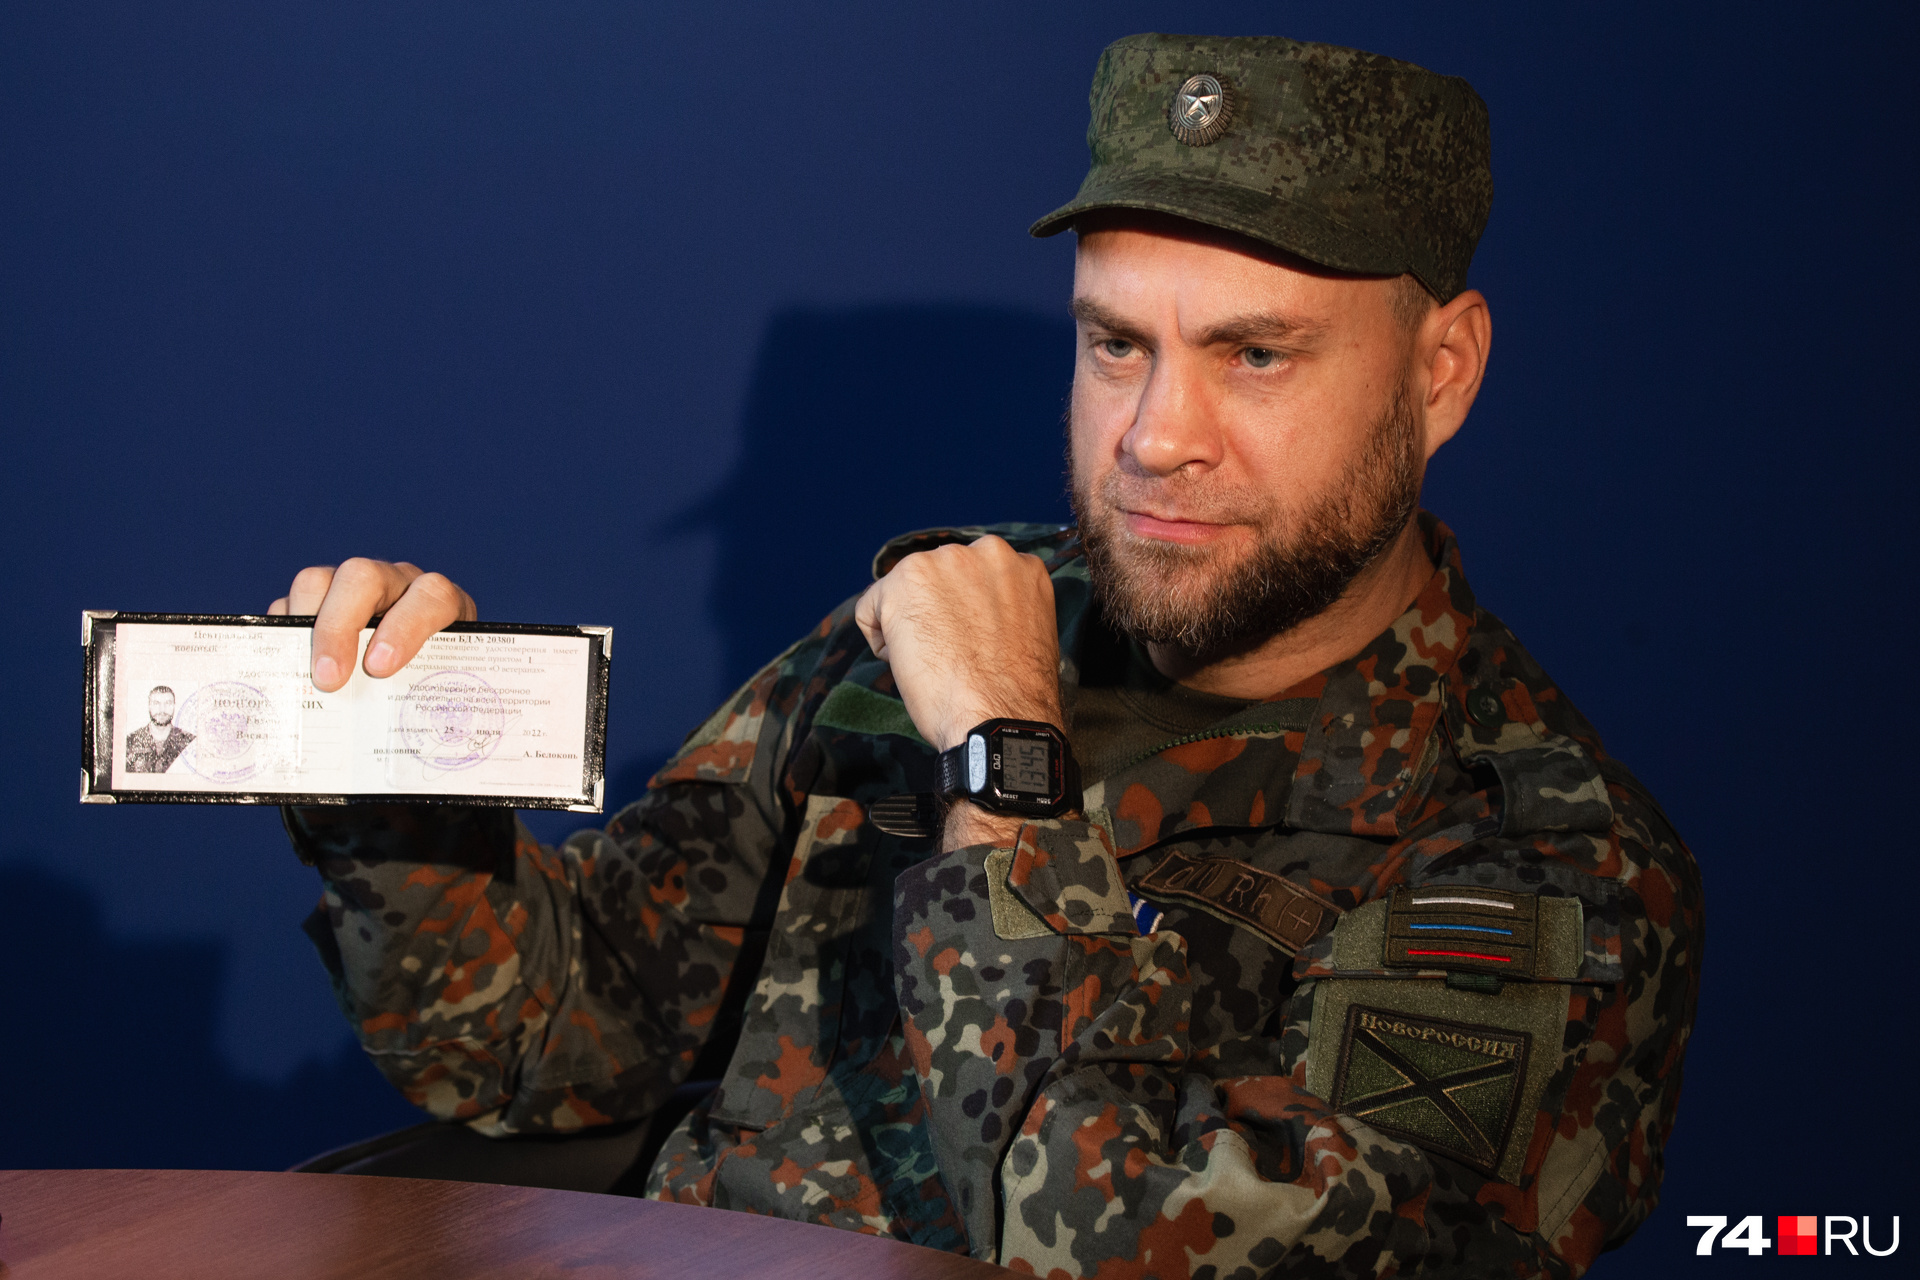 Удостоверение ветерана боевых действий Евгений получил после службы в Чечне в 2002 году